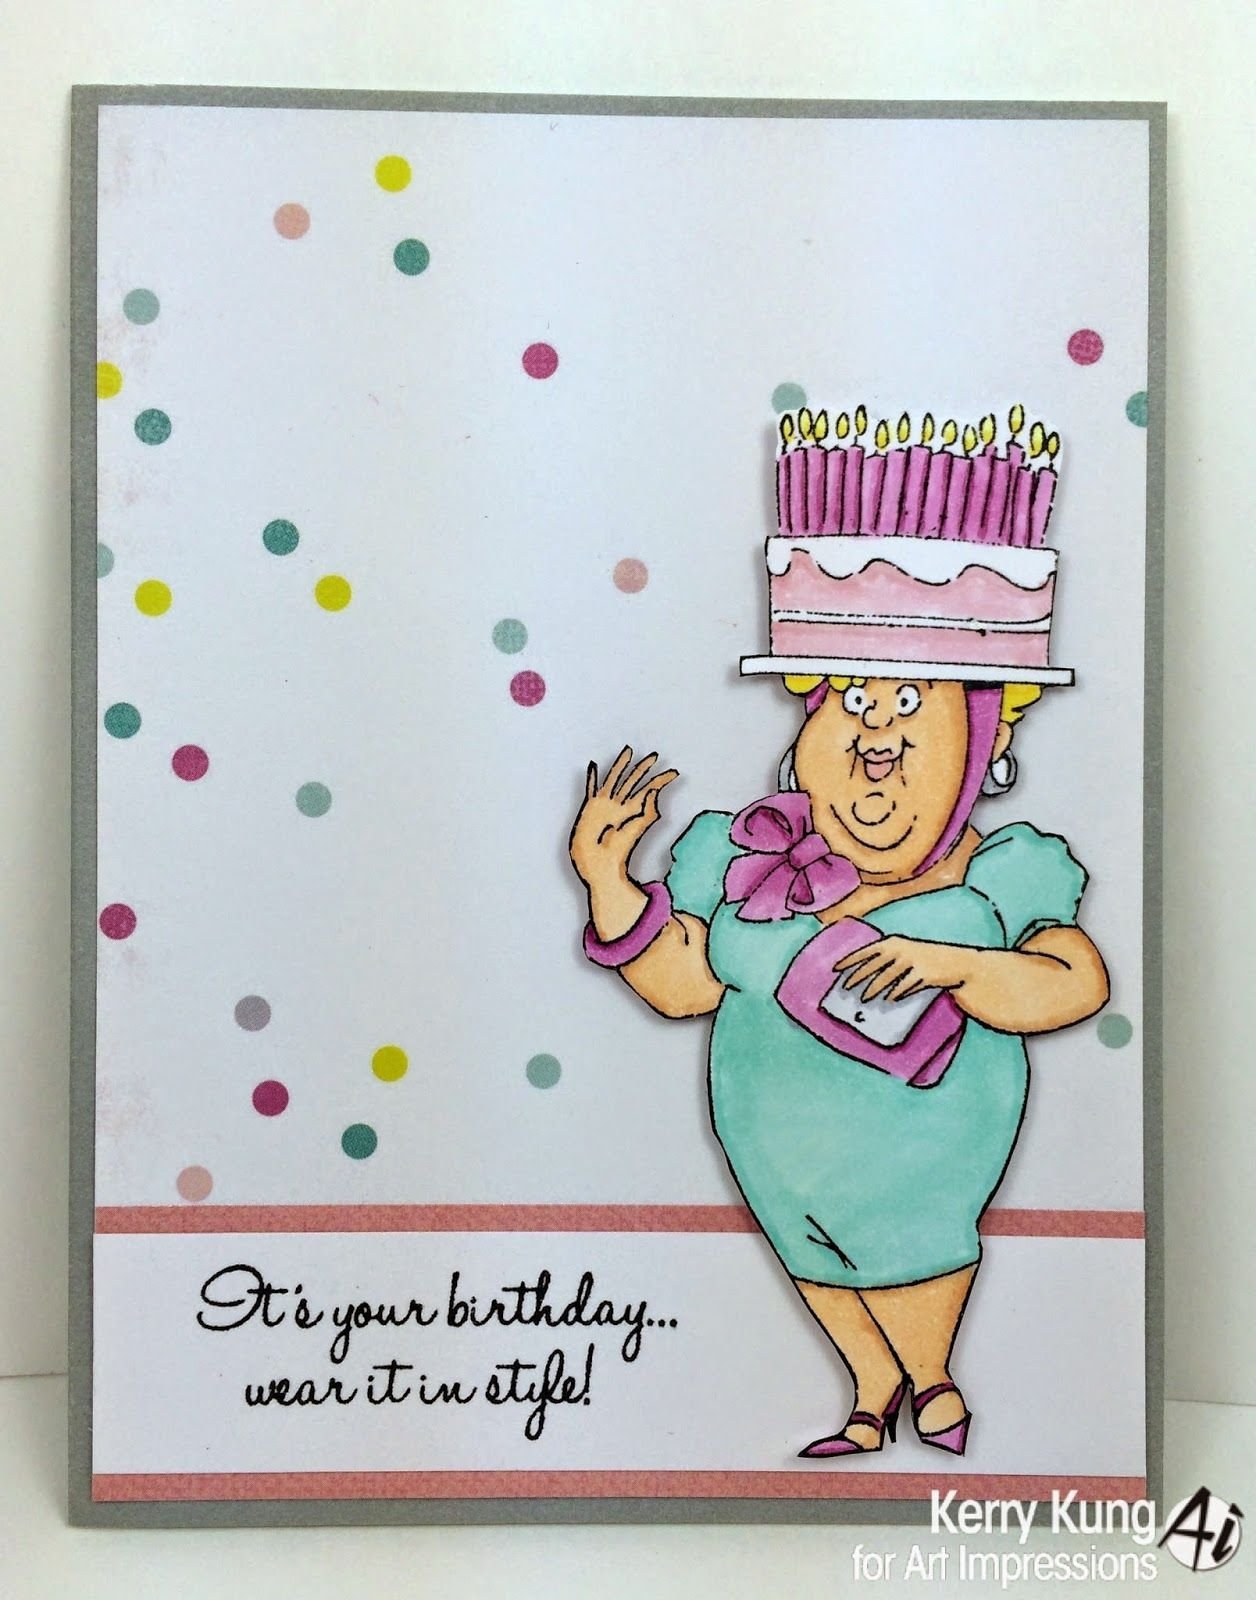 открытка бабушке на день рождения из